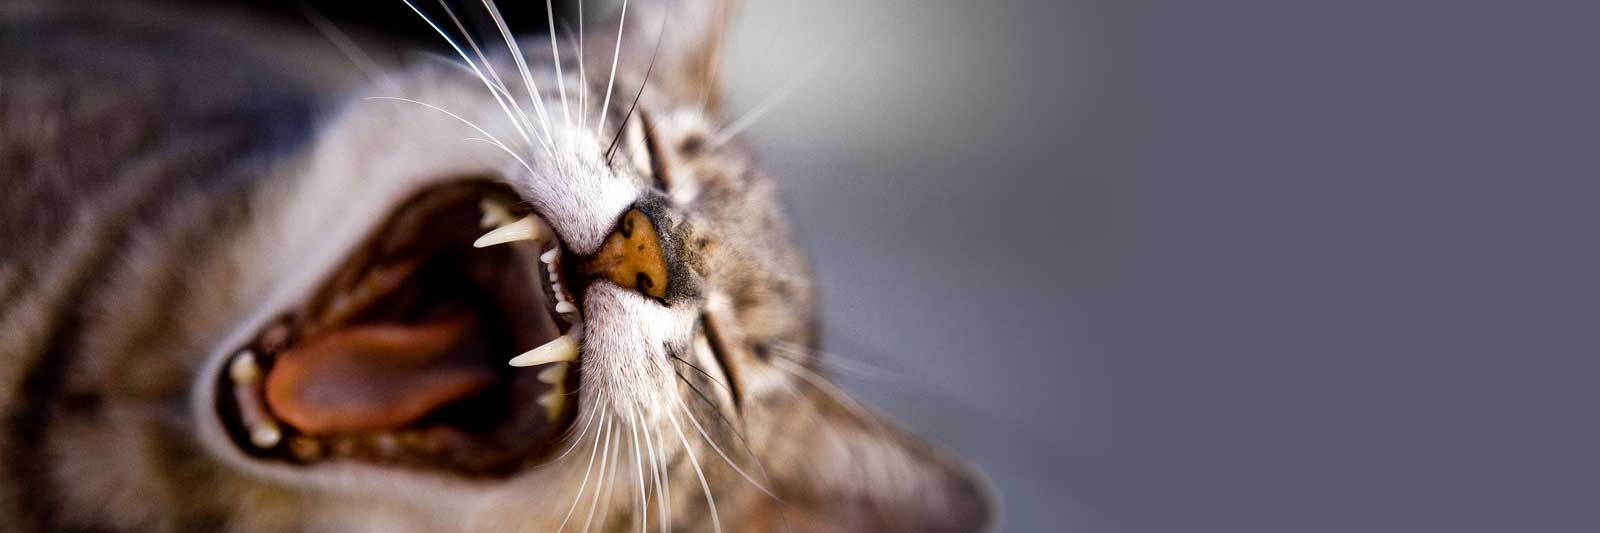 cat teeth pic